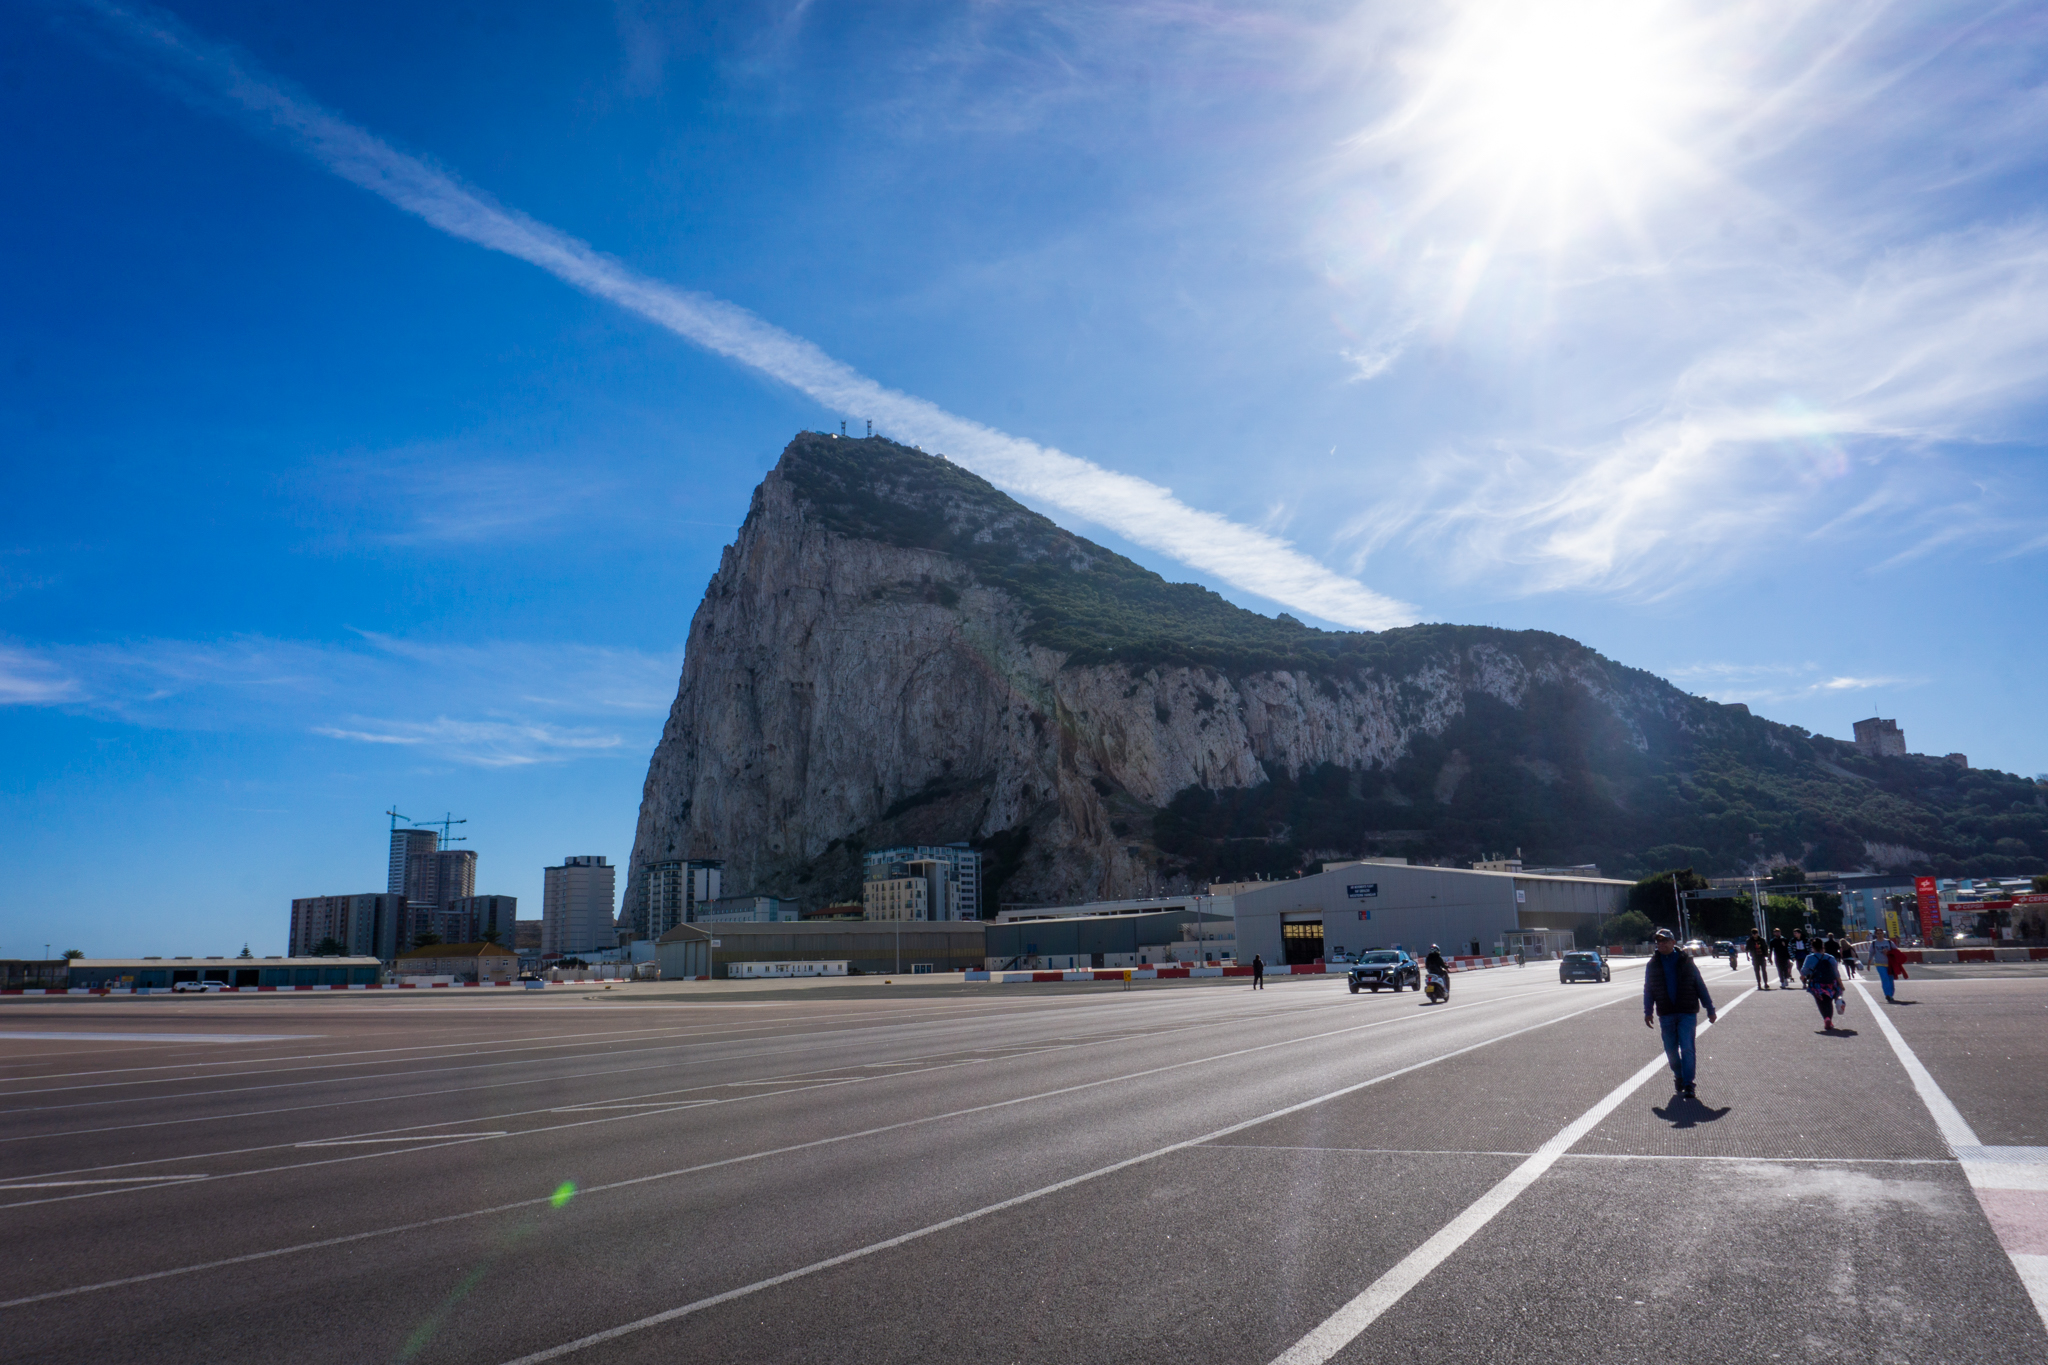 Landebahn vor dem Fels von Gibraltar